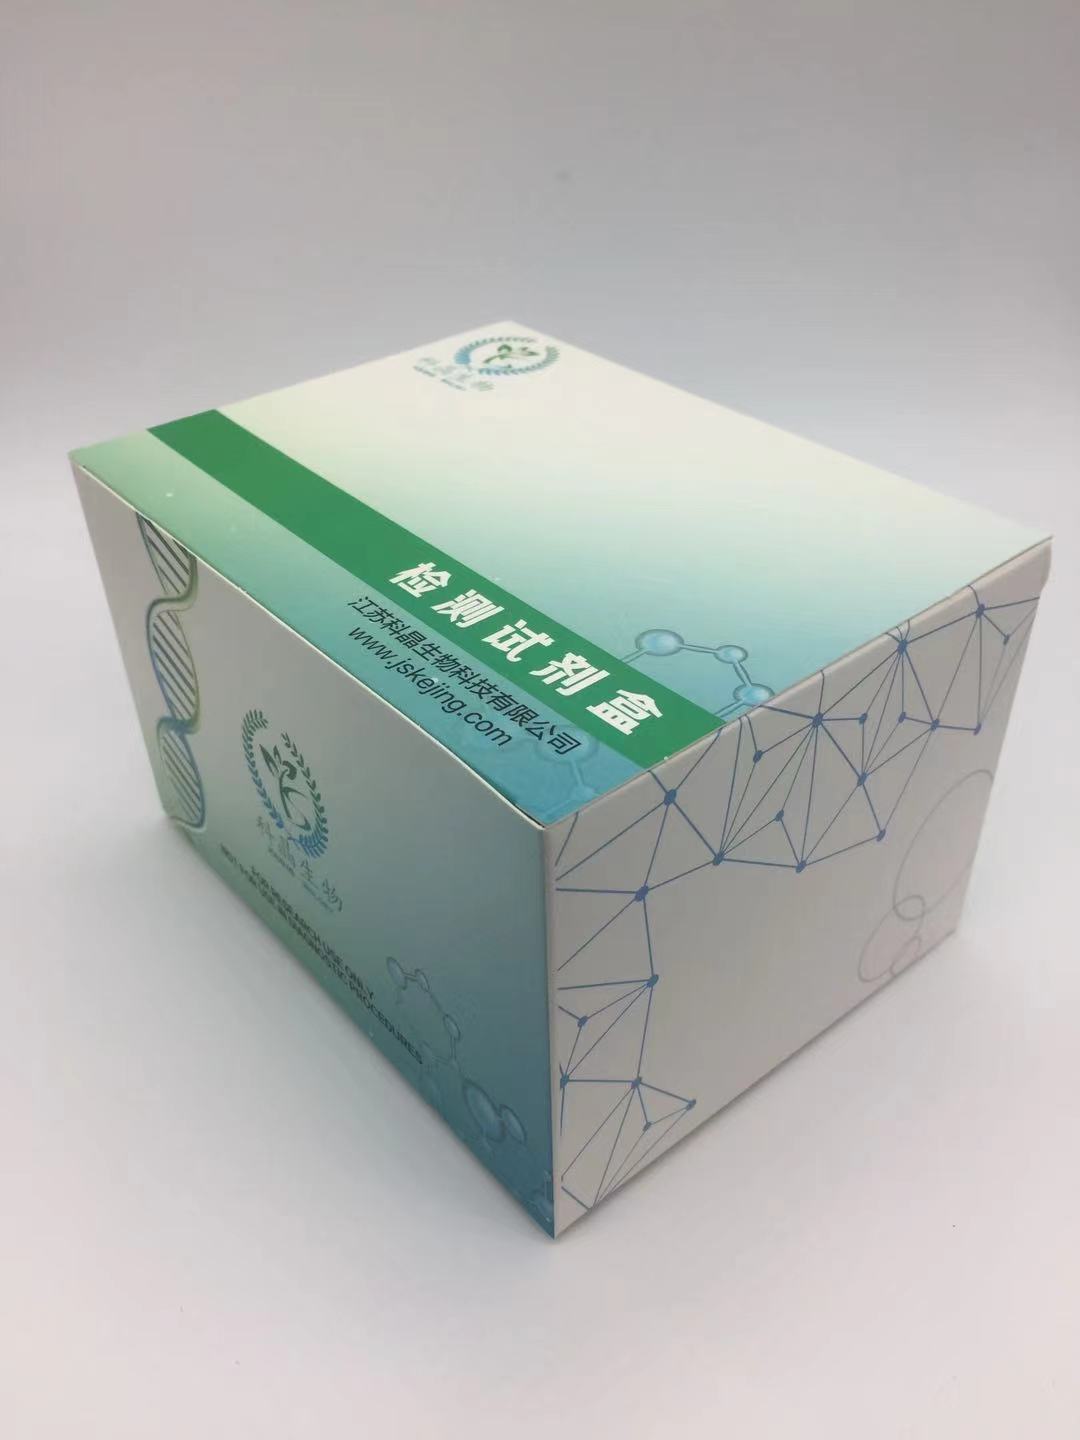 豚鼠晚期糖基化终末产物(AGEs)ELISA试剂盒